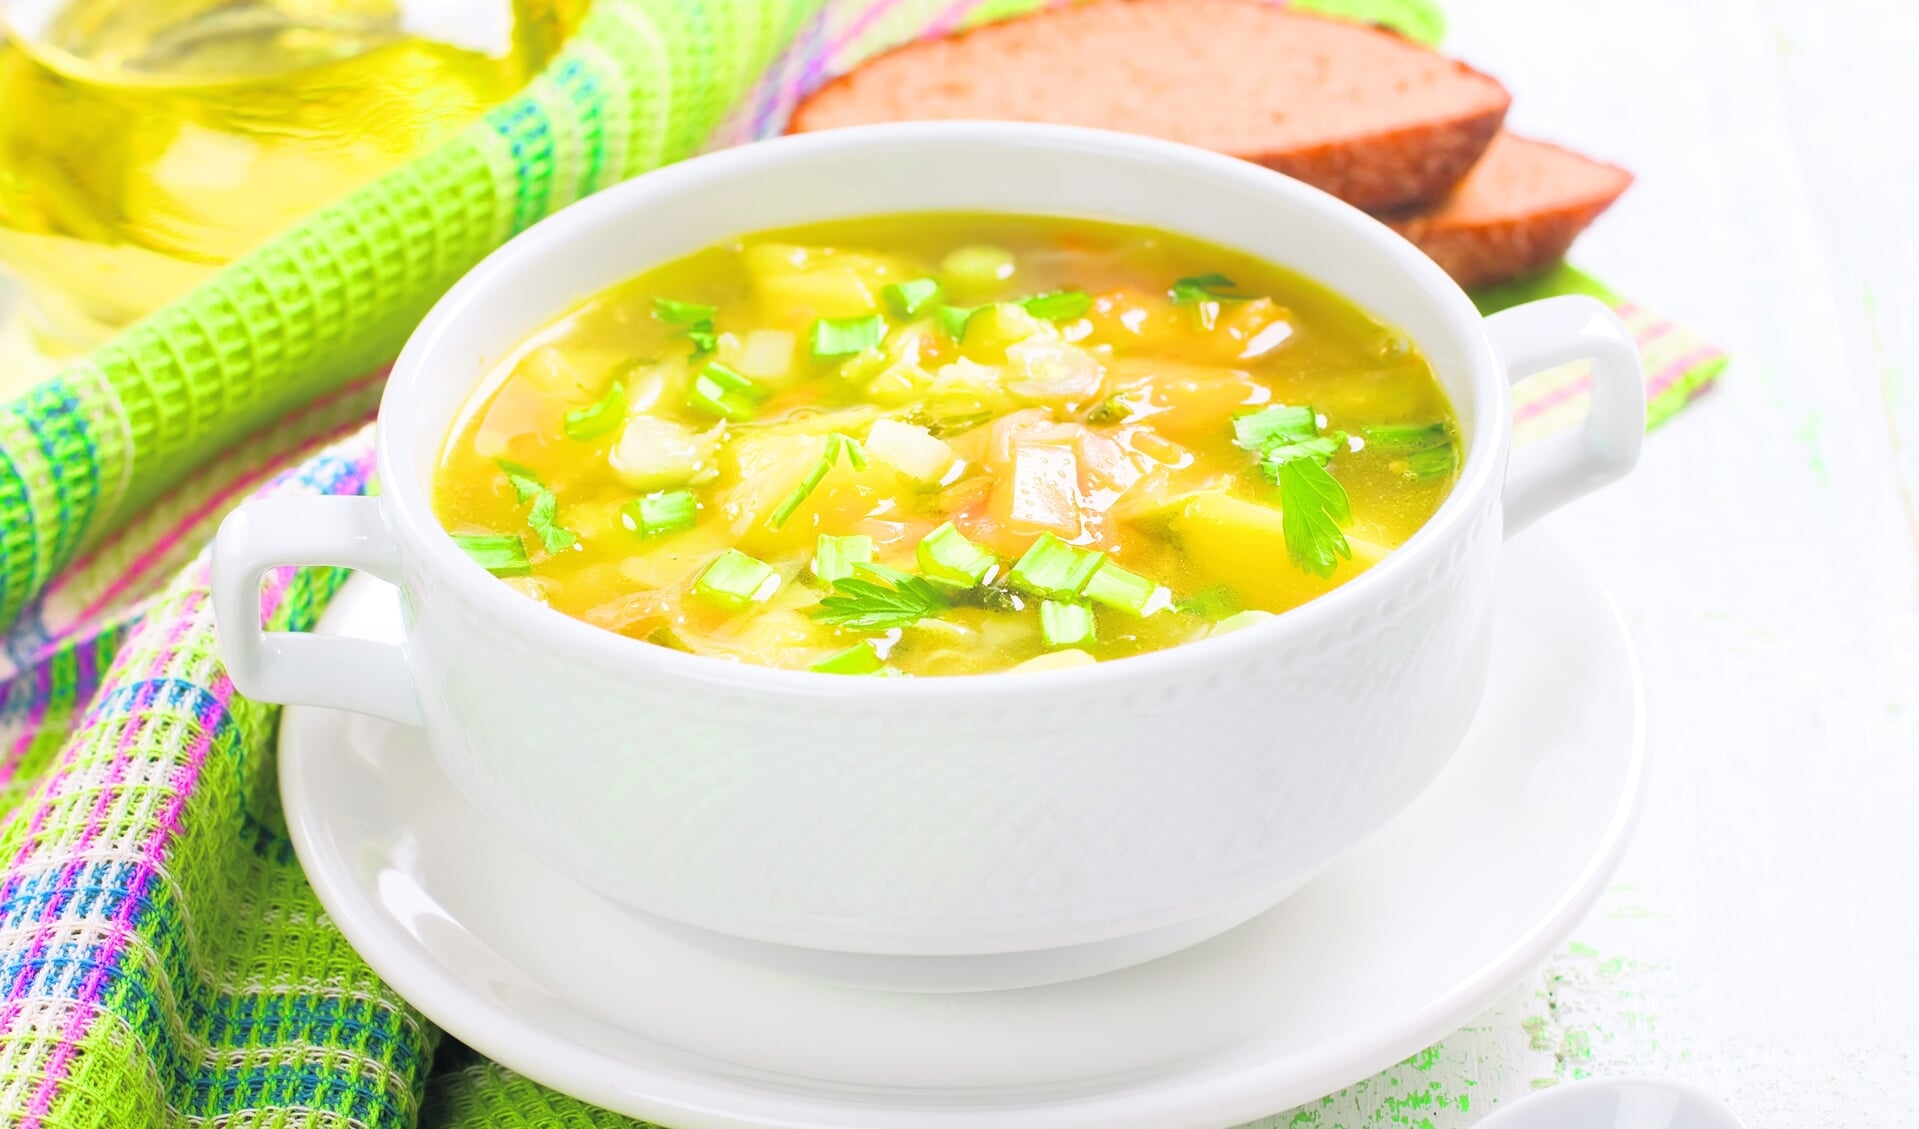 Bij de lunch wordt standaard een kop soep geserveerd.